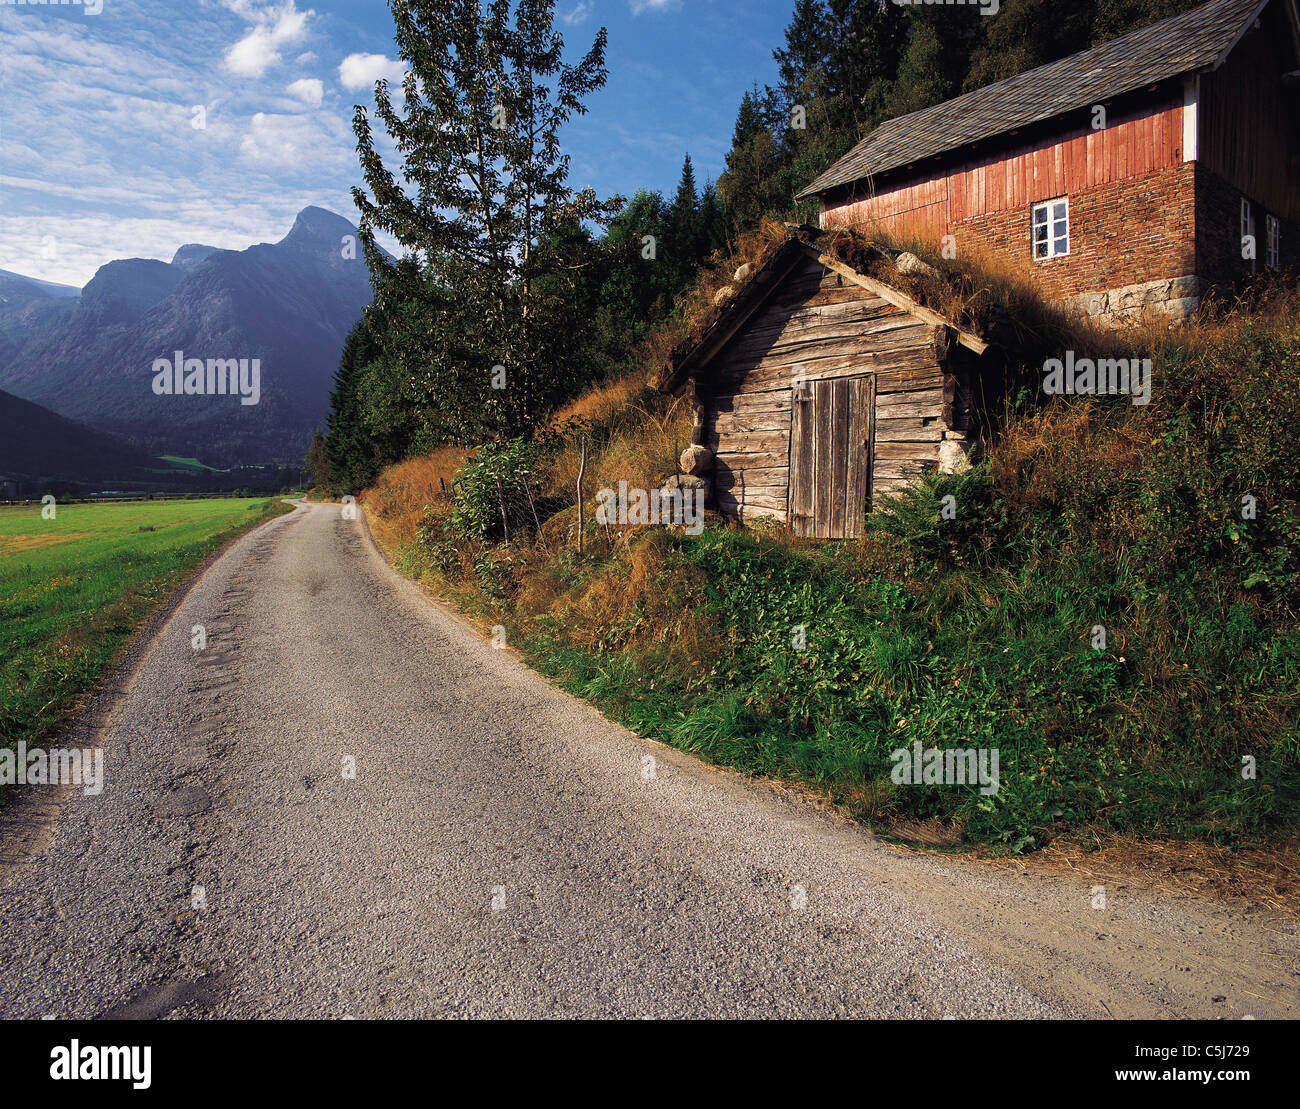 Un chemin de campagne et bâtiments en bois rustique dans la région montagneuse du district, la Norvège Fjaerland Banque D'Images